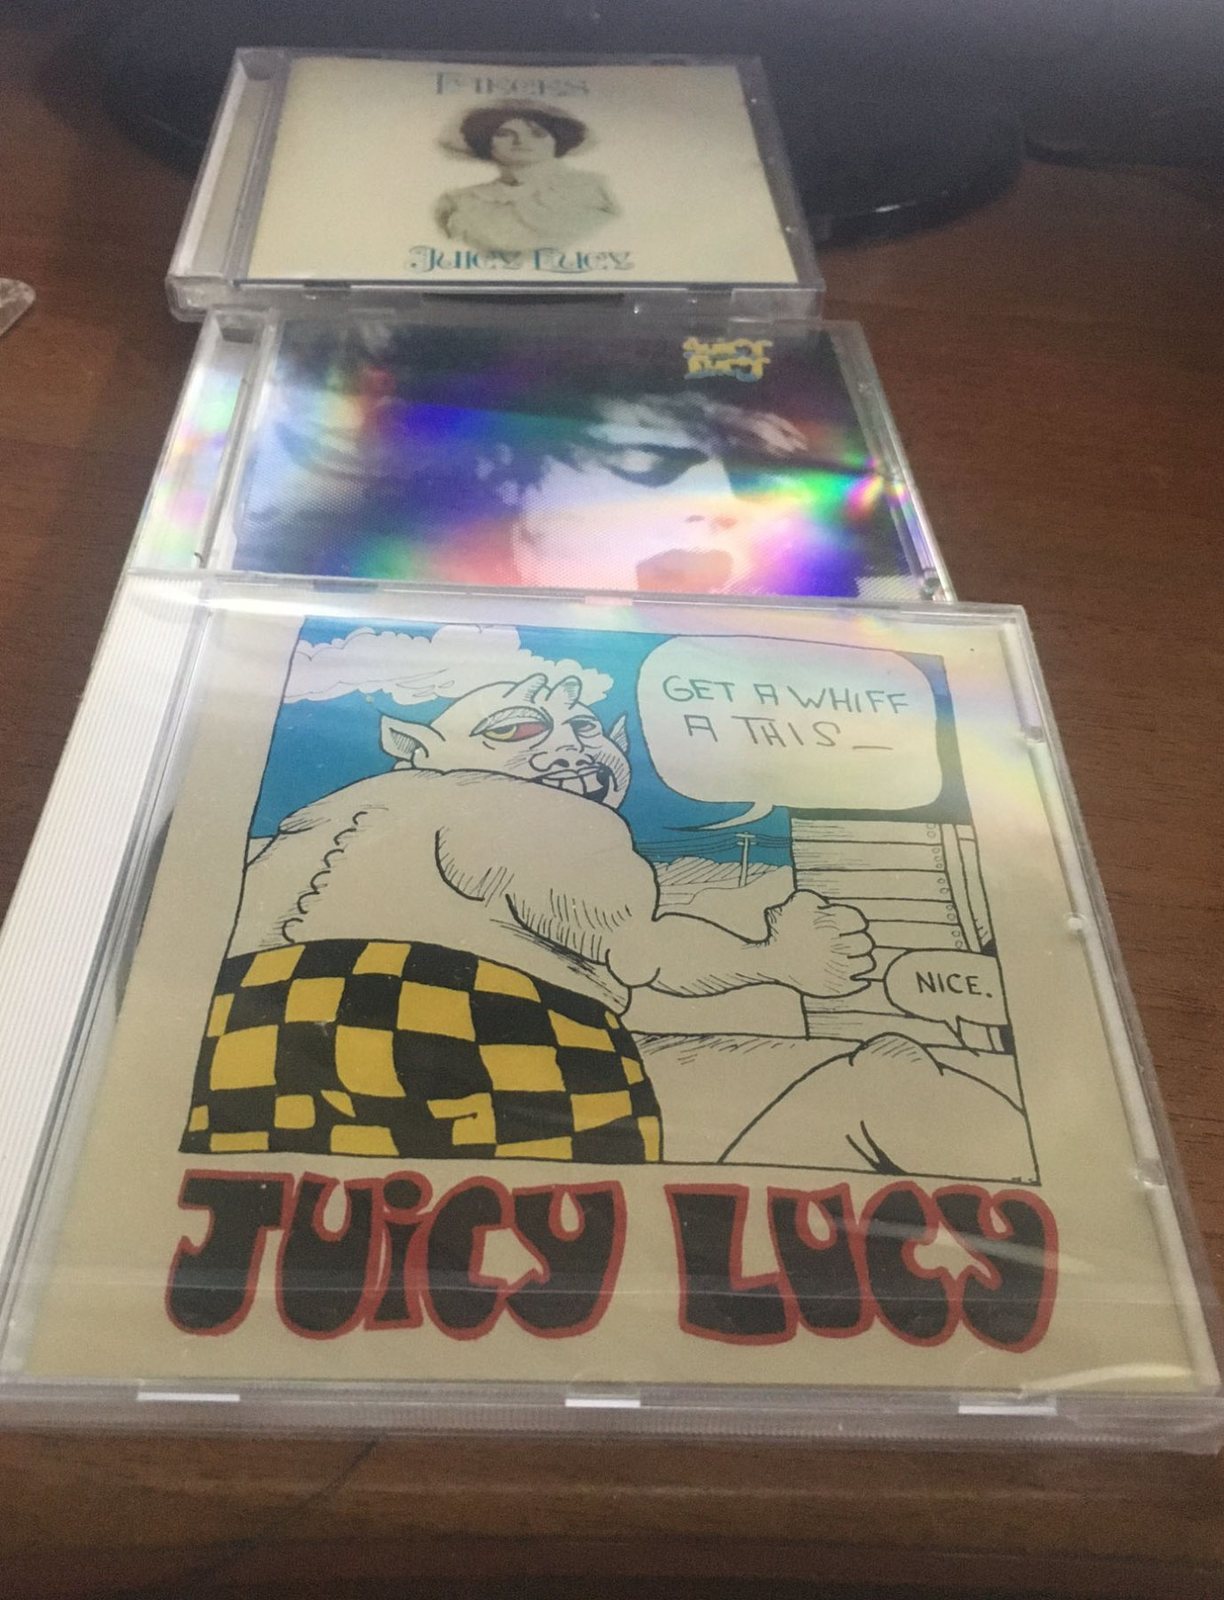 juicy lucy.JPG